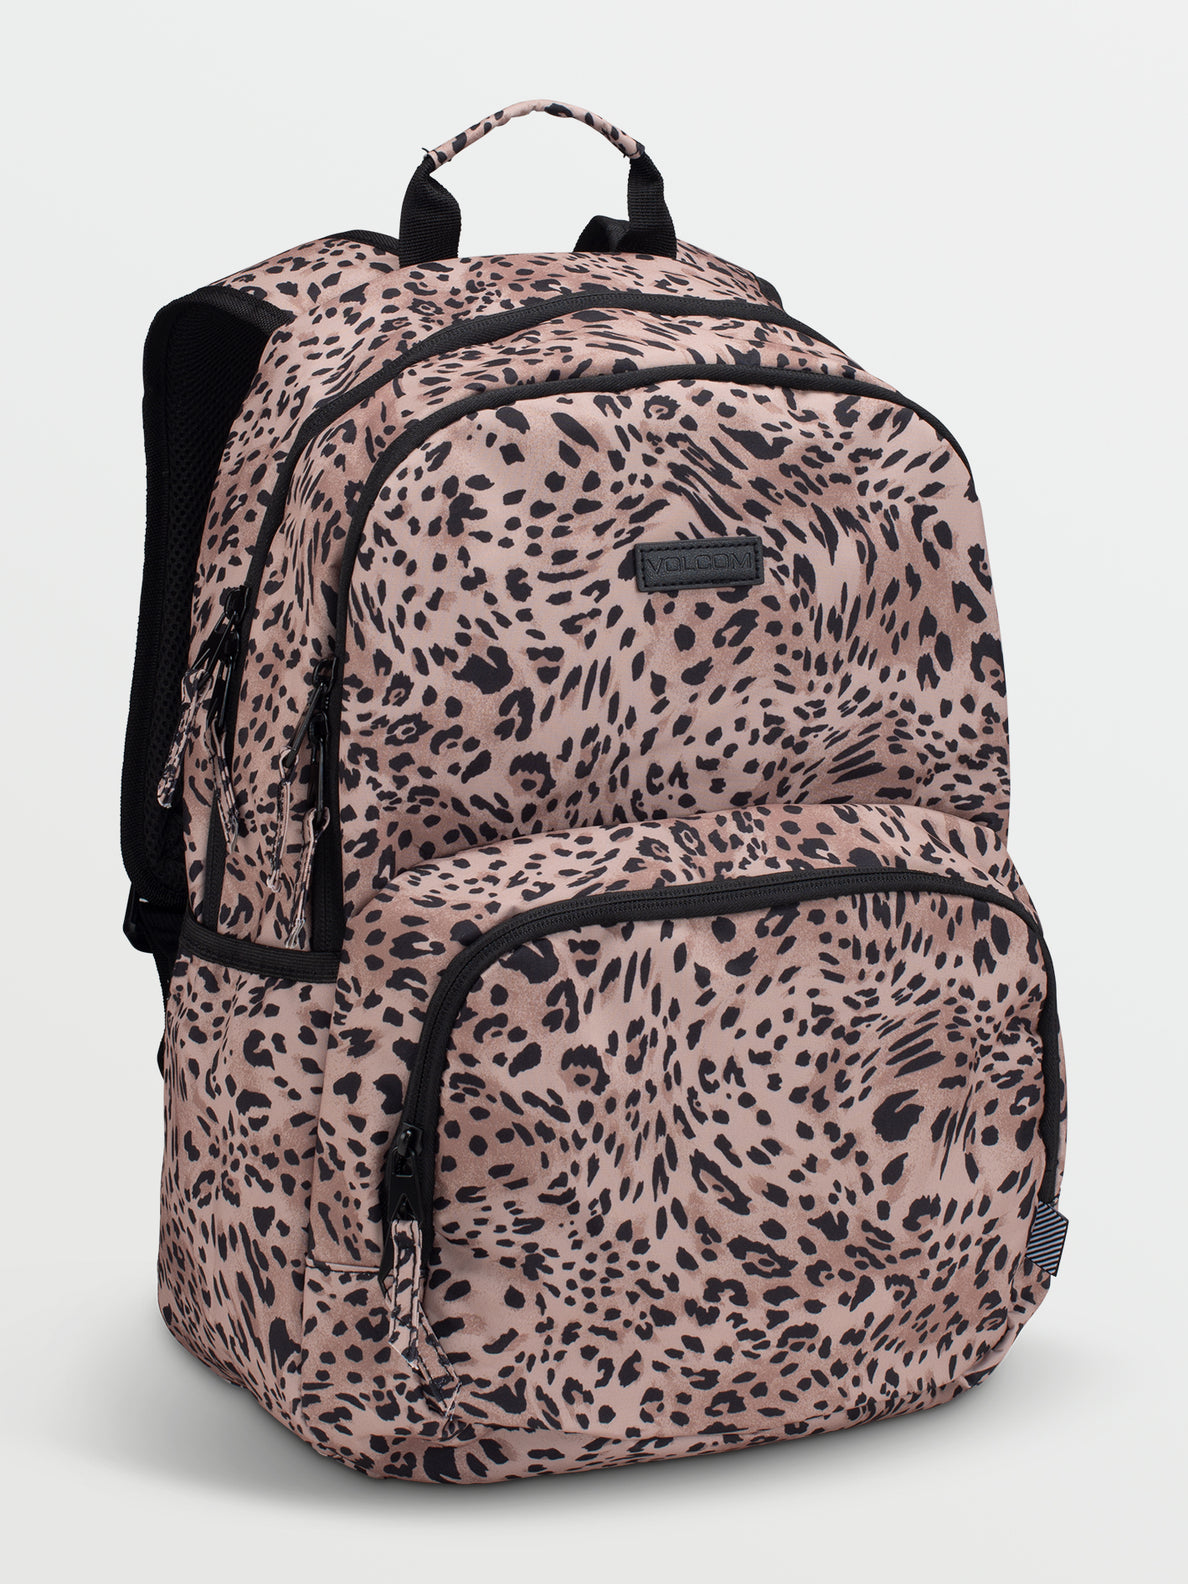 Animal print bag with logo Girl, Pink